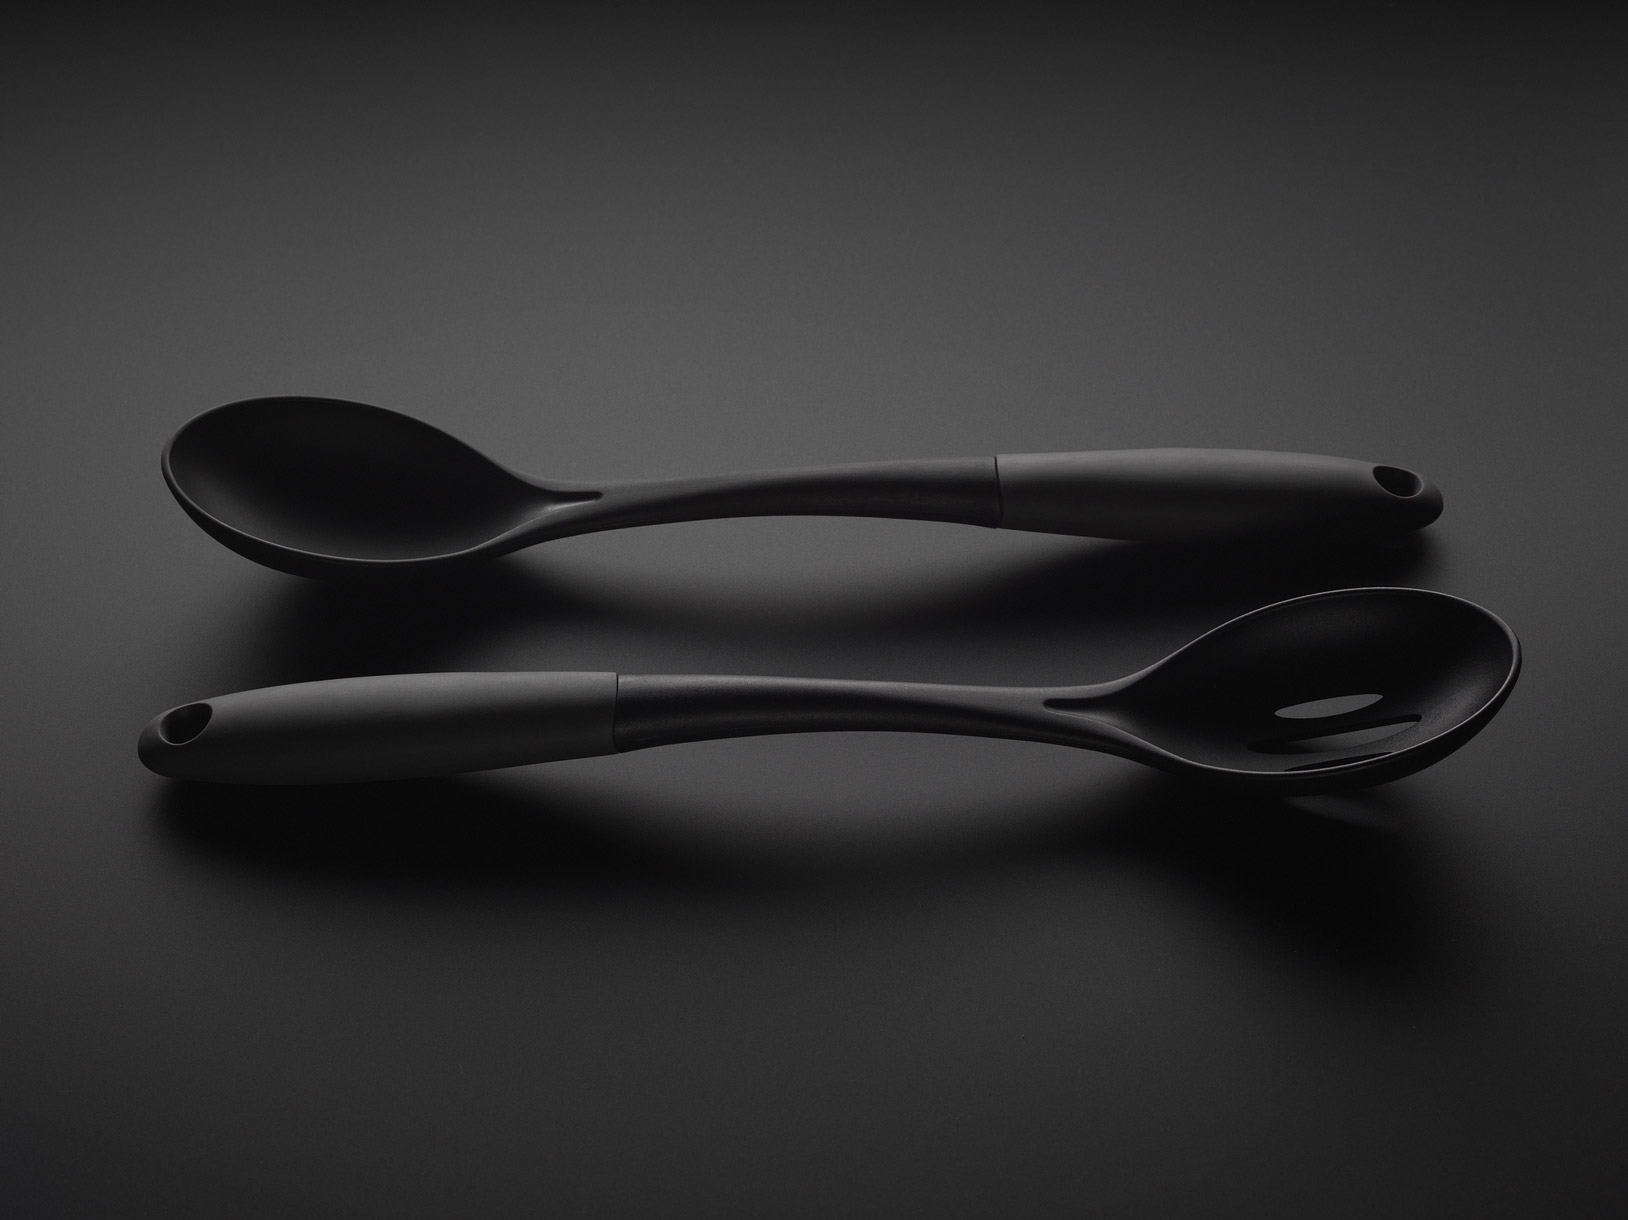 Kitchen utensils on a black background